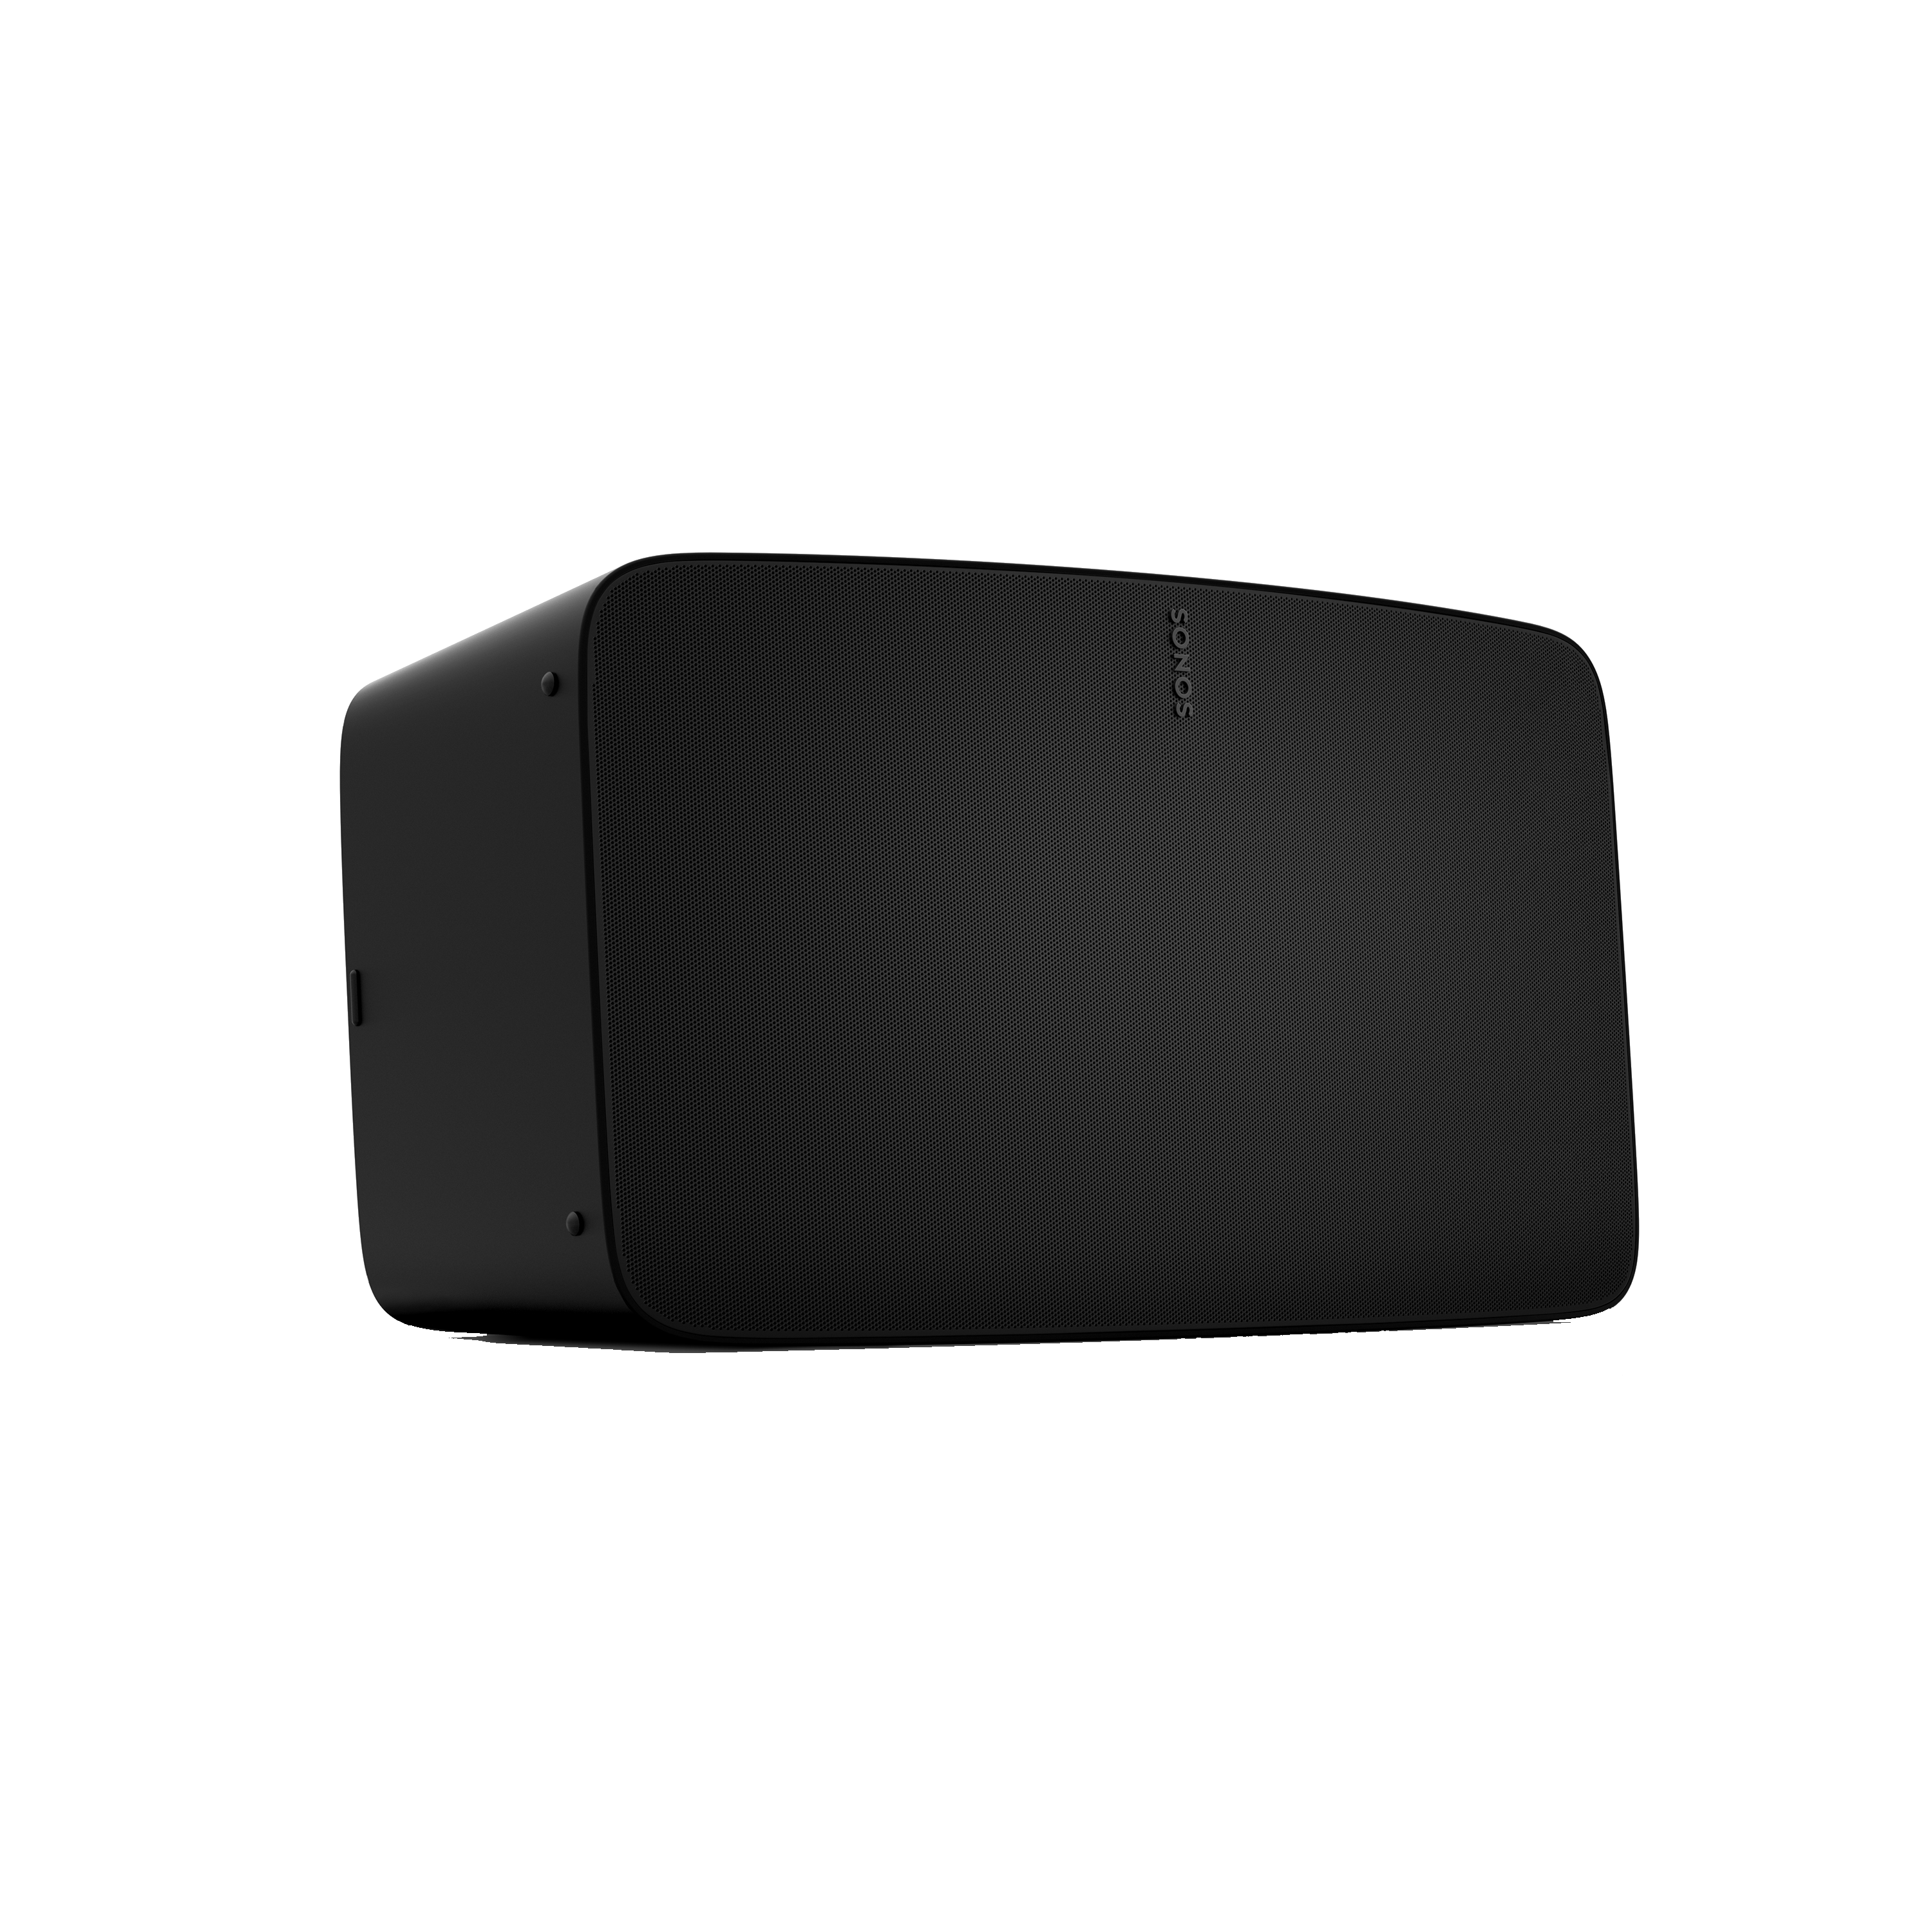 Sonos FIVE wifi enabled speaker